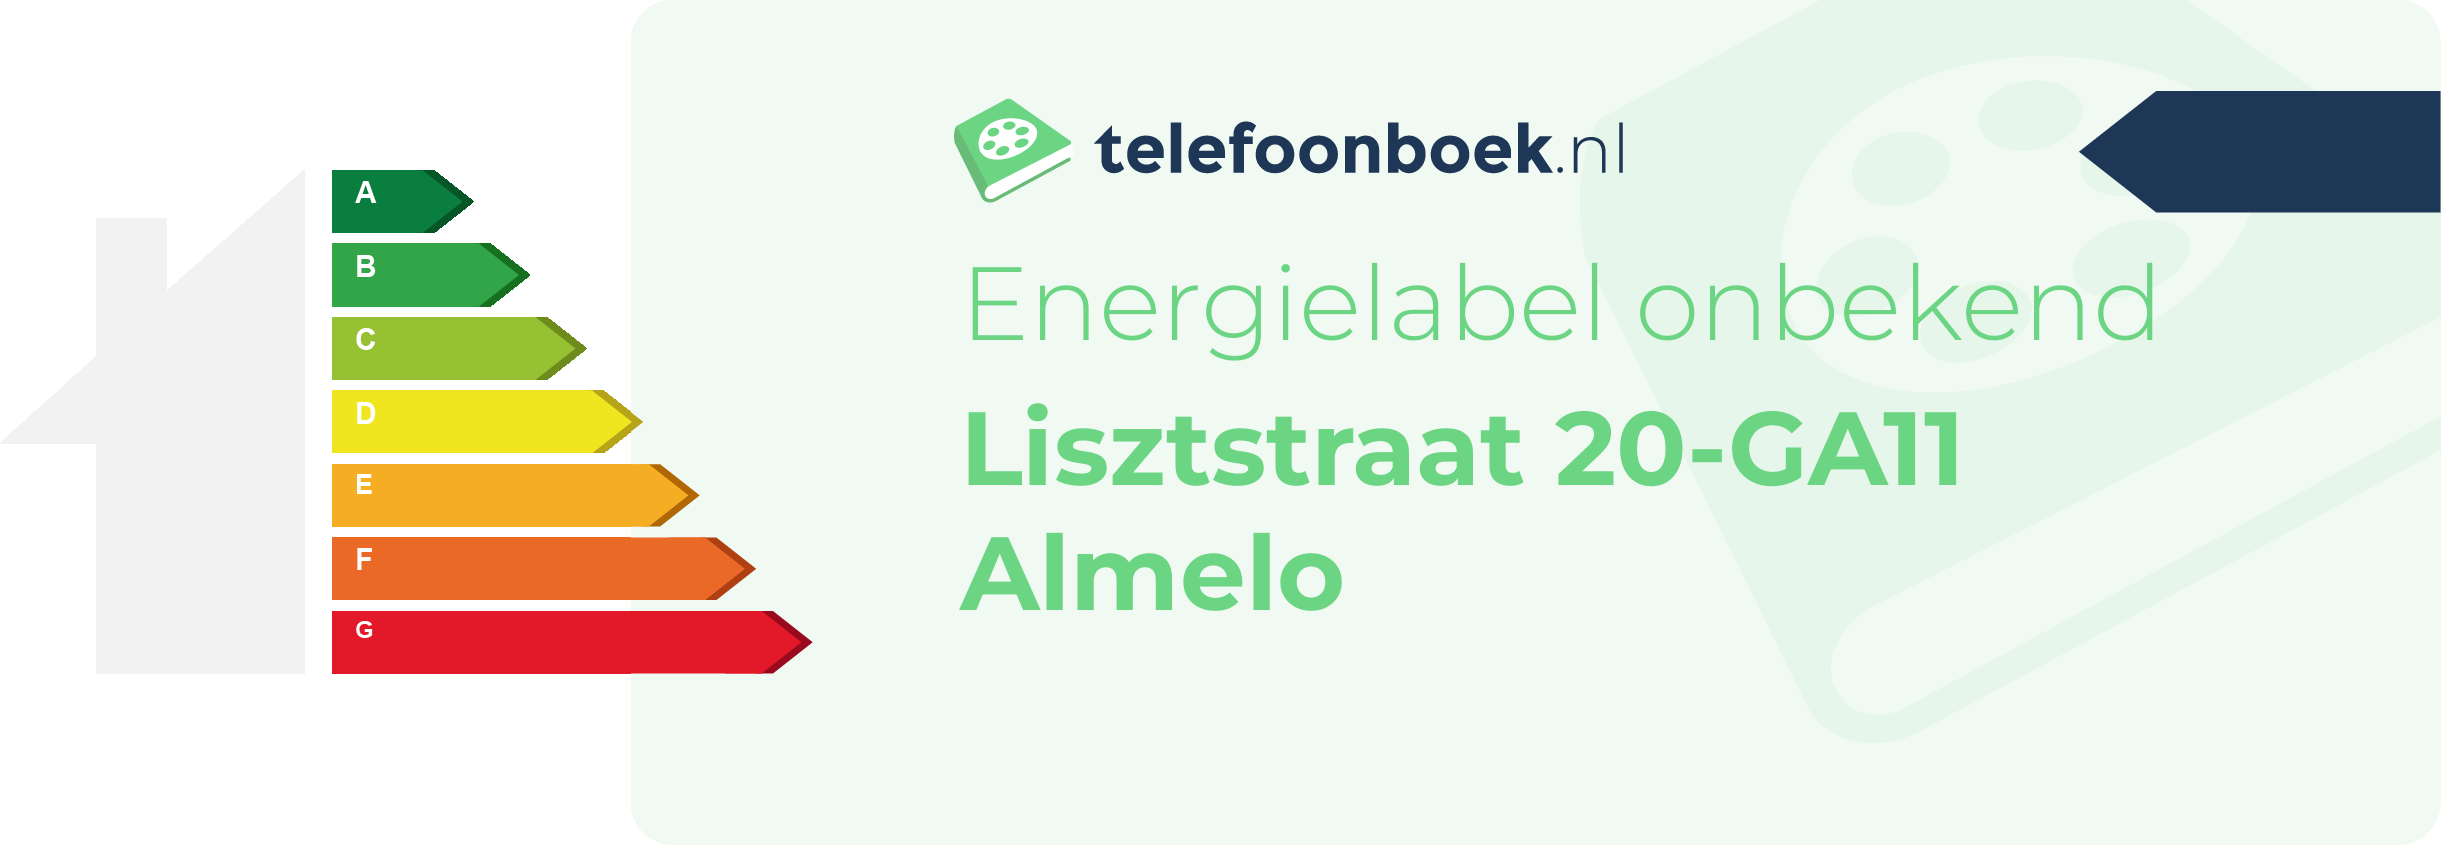 Energielabel Lisztstraat 20-GA11 Almelo